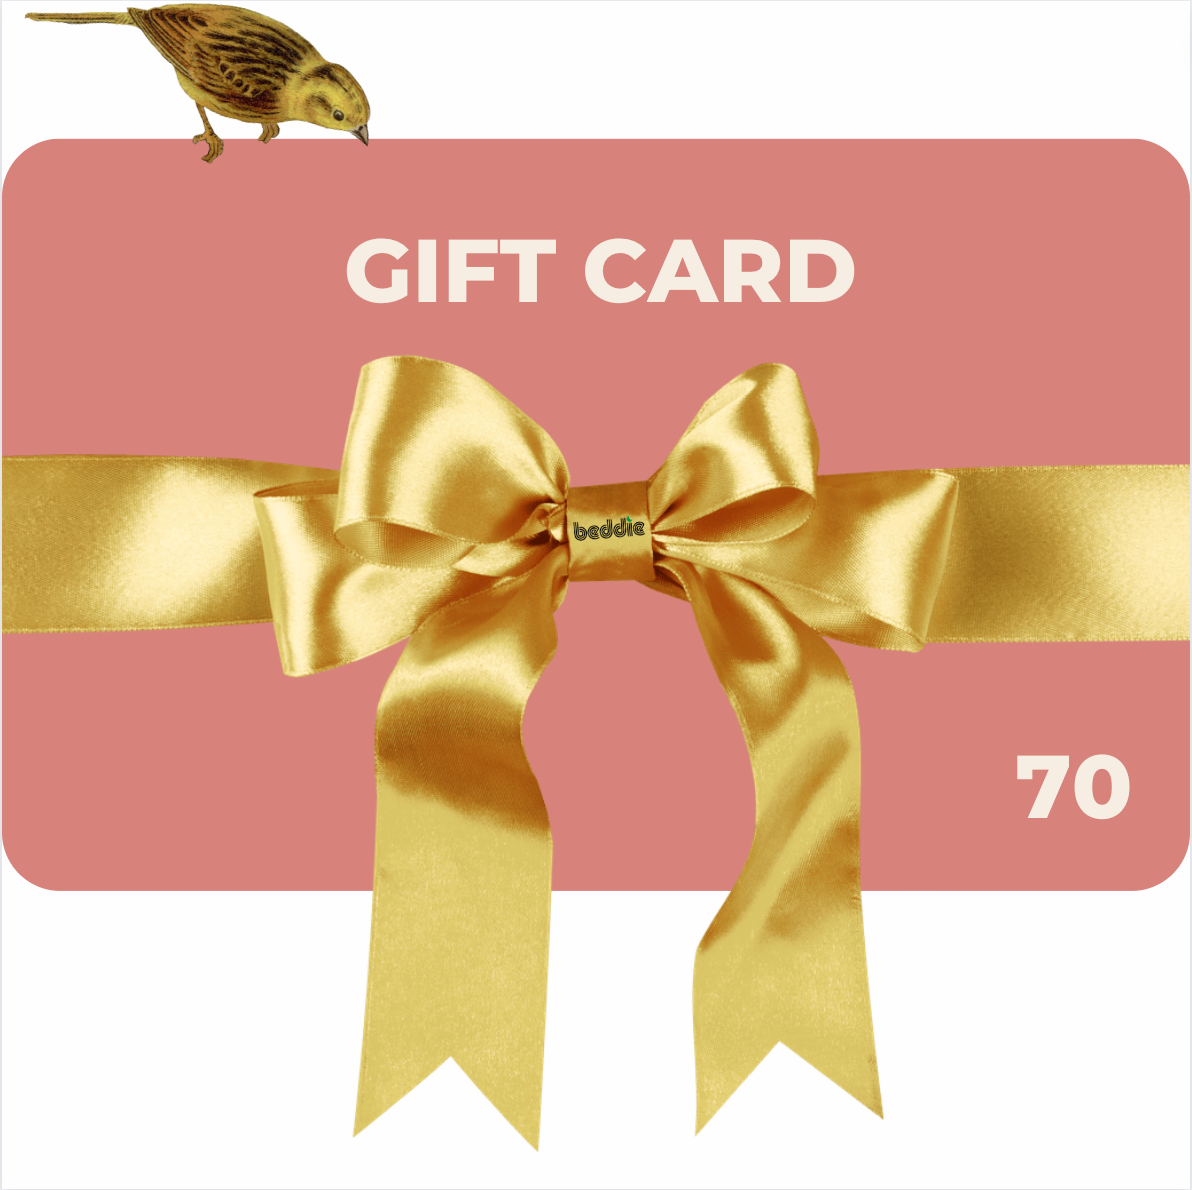 Beddie Gift Card $70. Best Gift Idea!